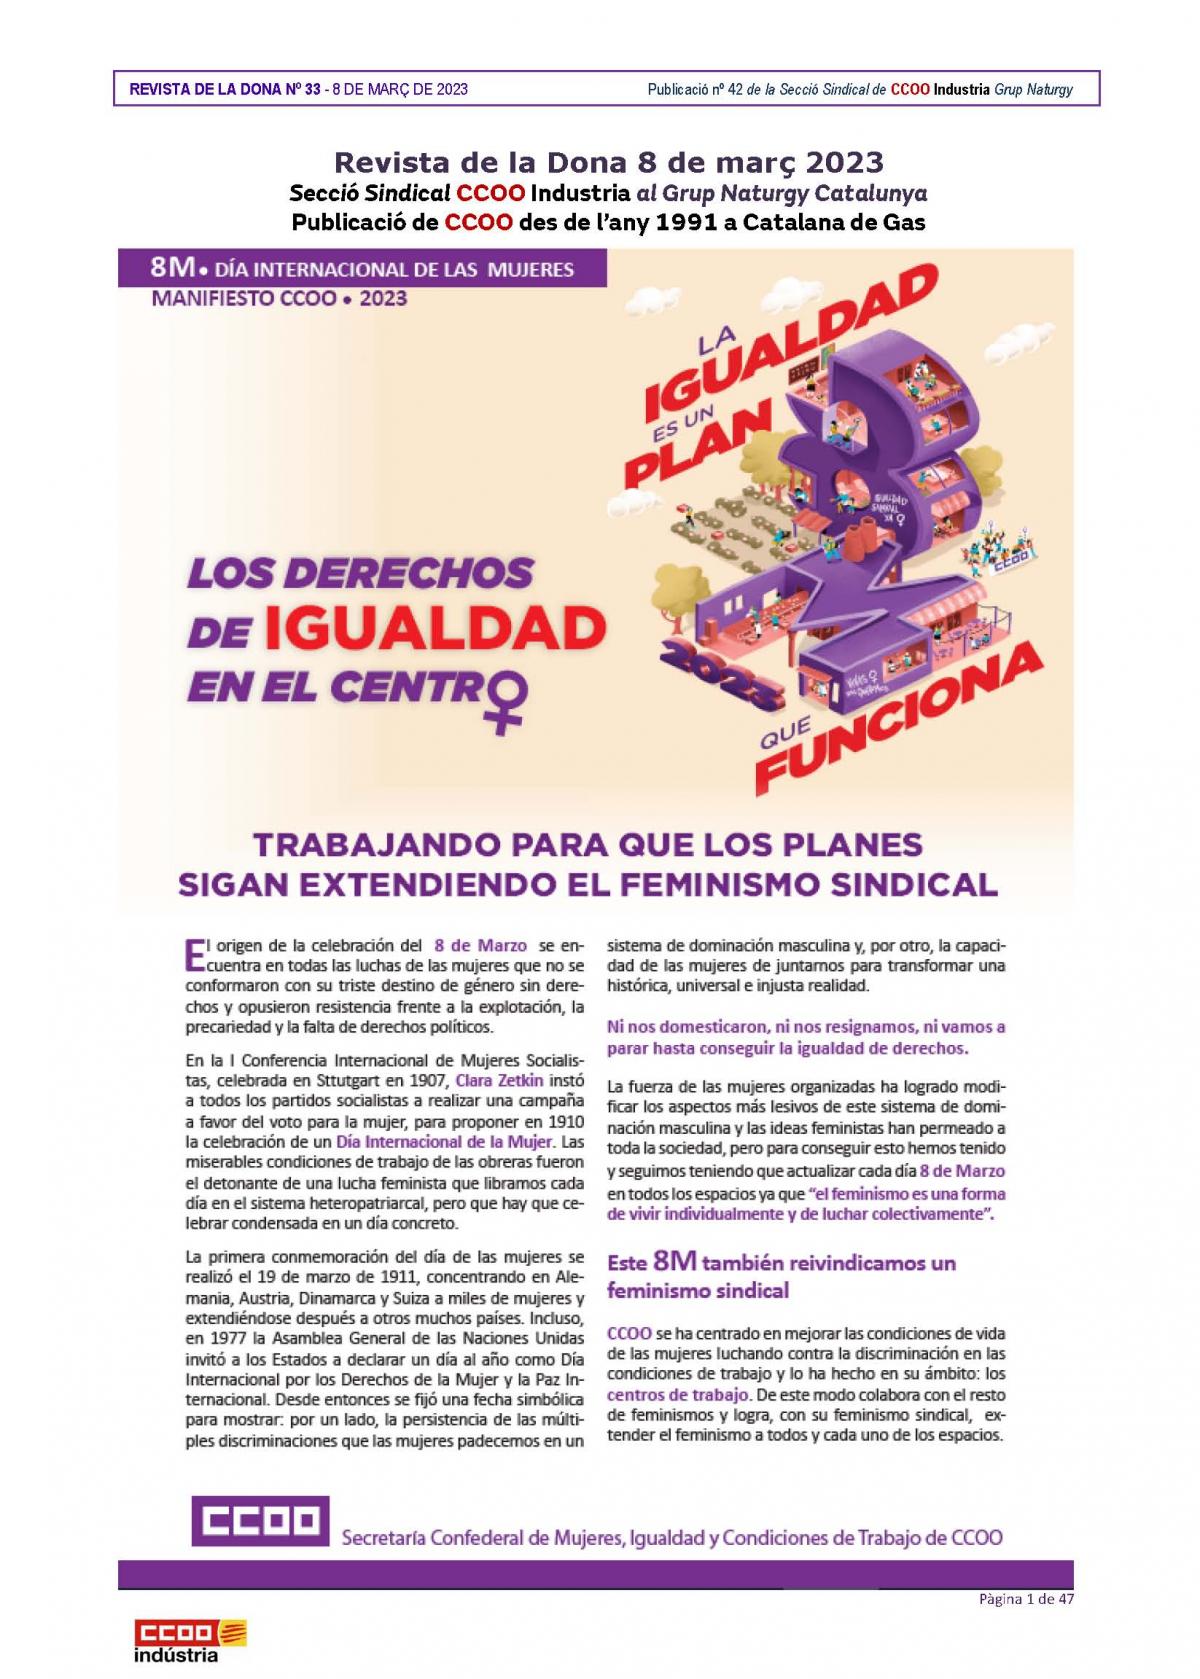 Revista de la Dona 8 de Mar, 33 (Mar de 2023).